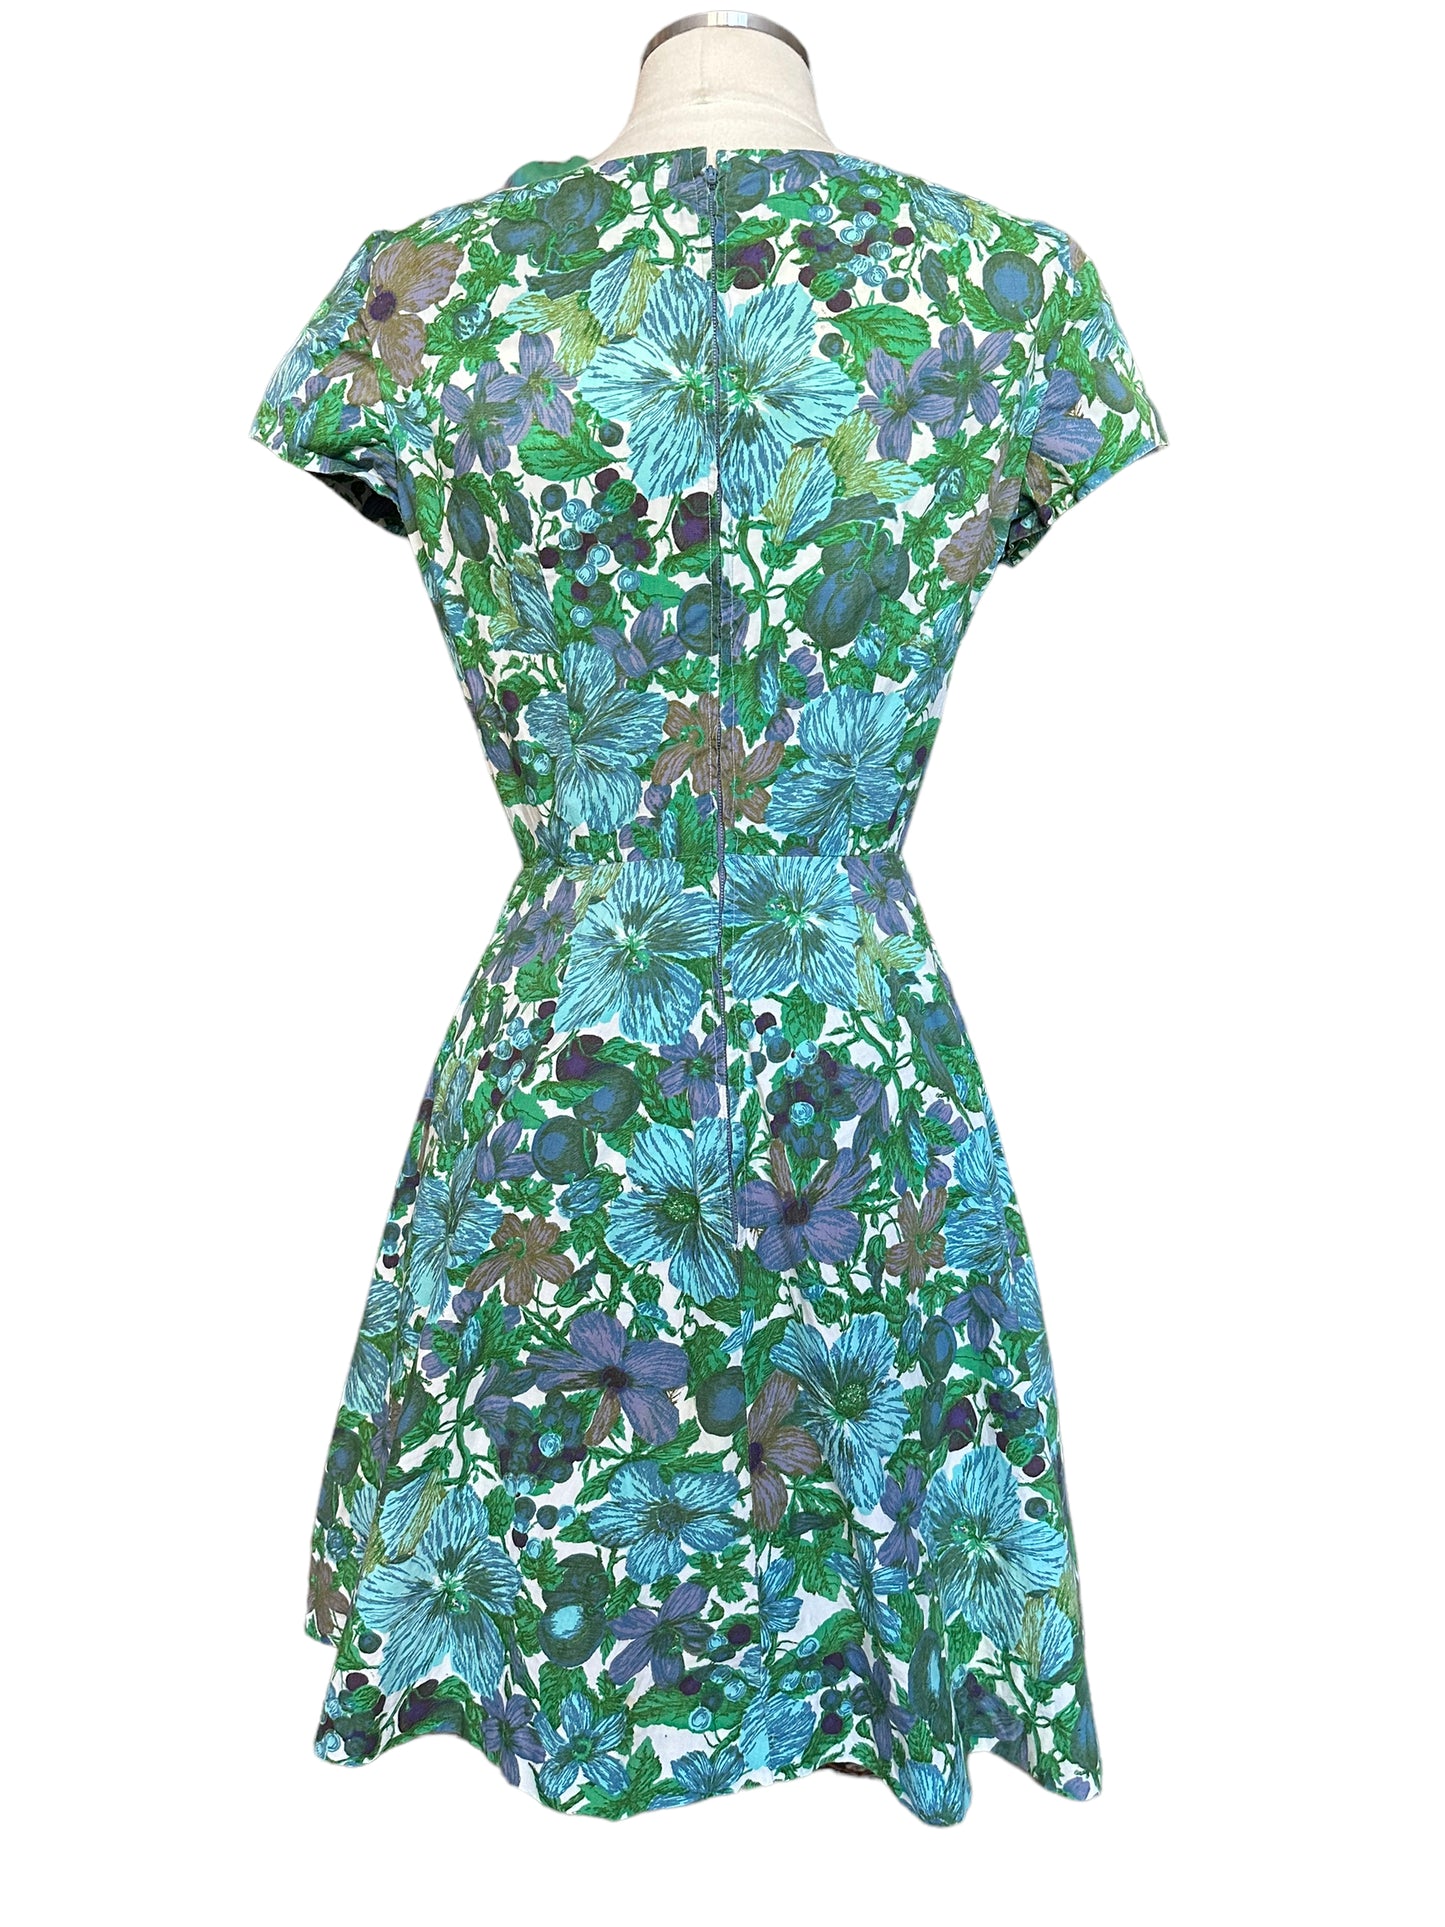 Full back view of Vintage 1950s Blue Floral Cotton Dress |  Barn Owl True Vintage | Seattle Vintage Dresses